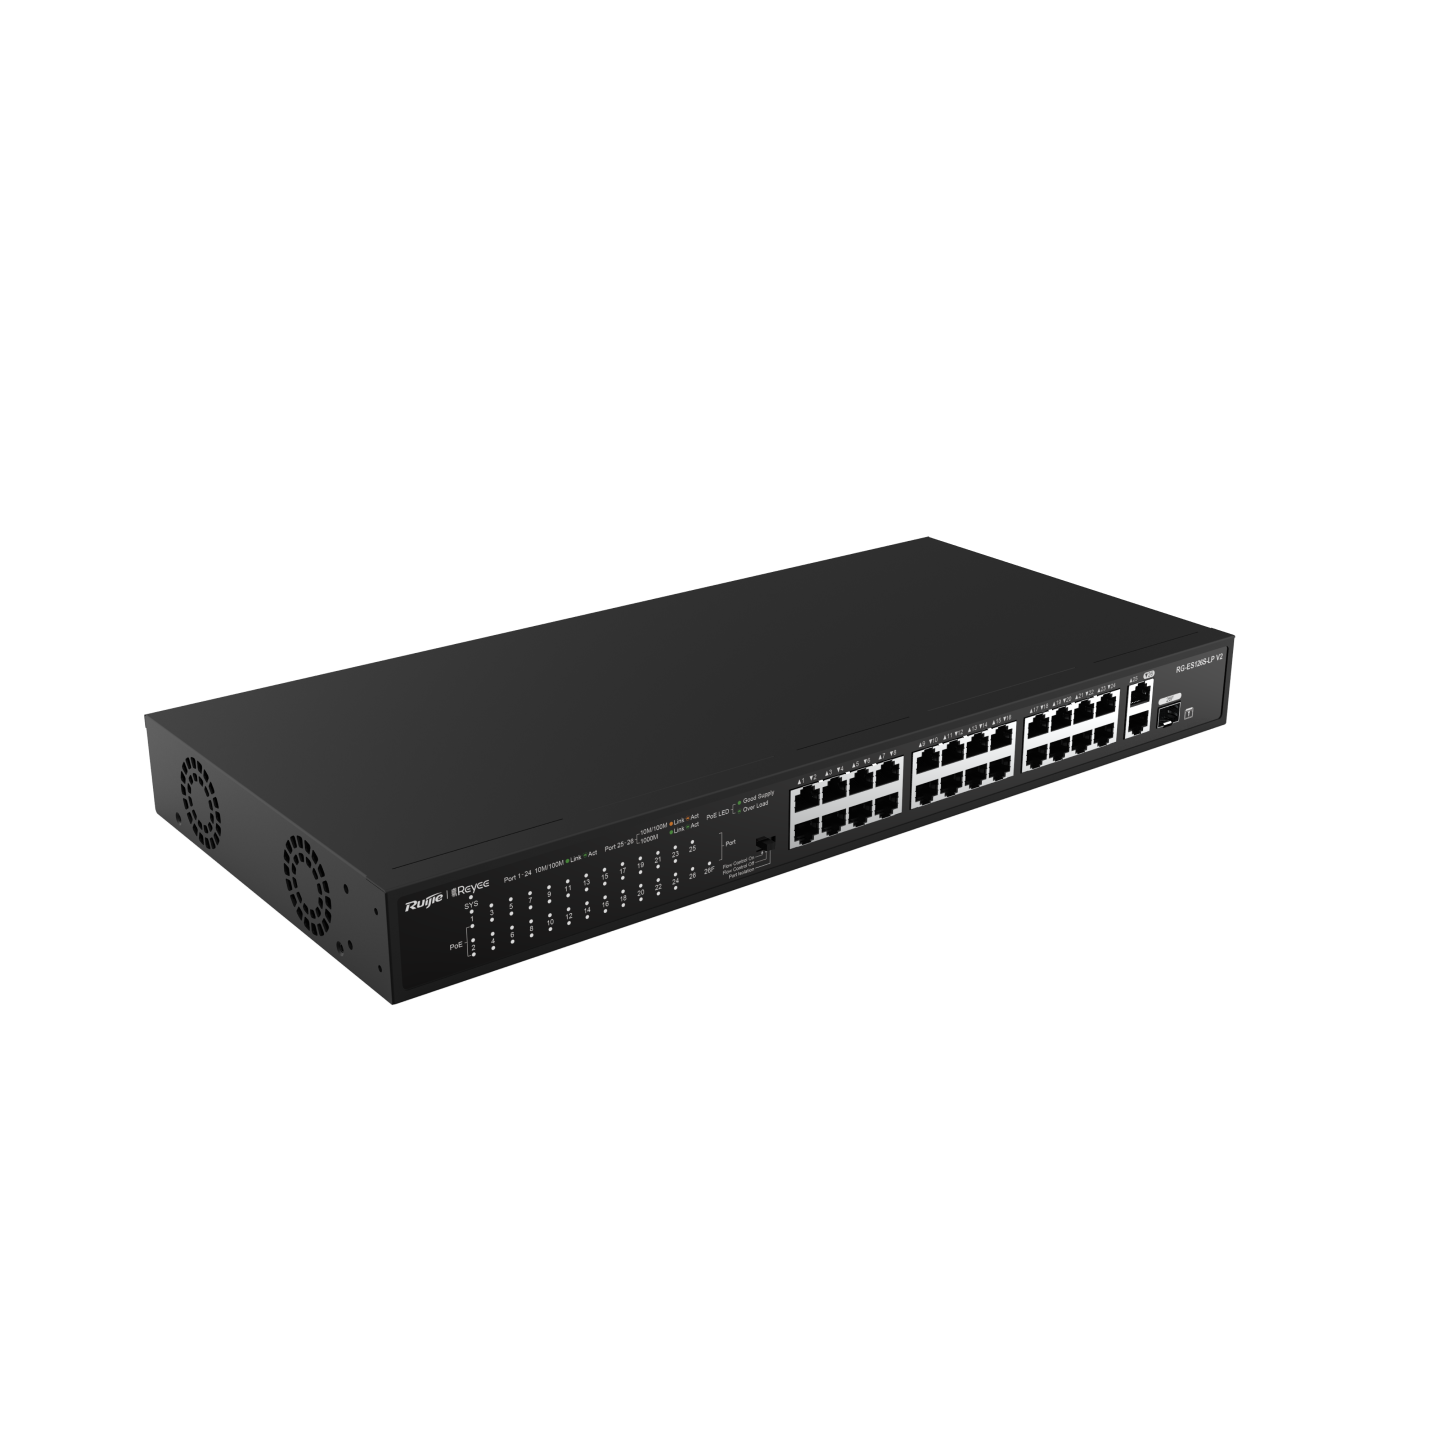 RG-ES126S-LP V2, 24-Port 10/100 Mbps with 2-Port Gigabit Rackmount PoE Switch